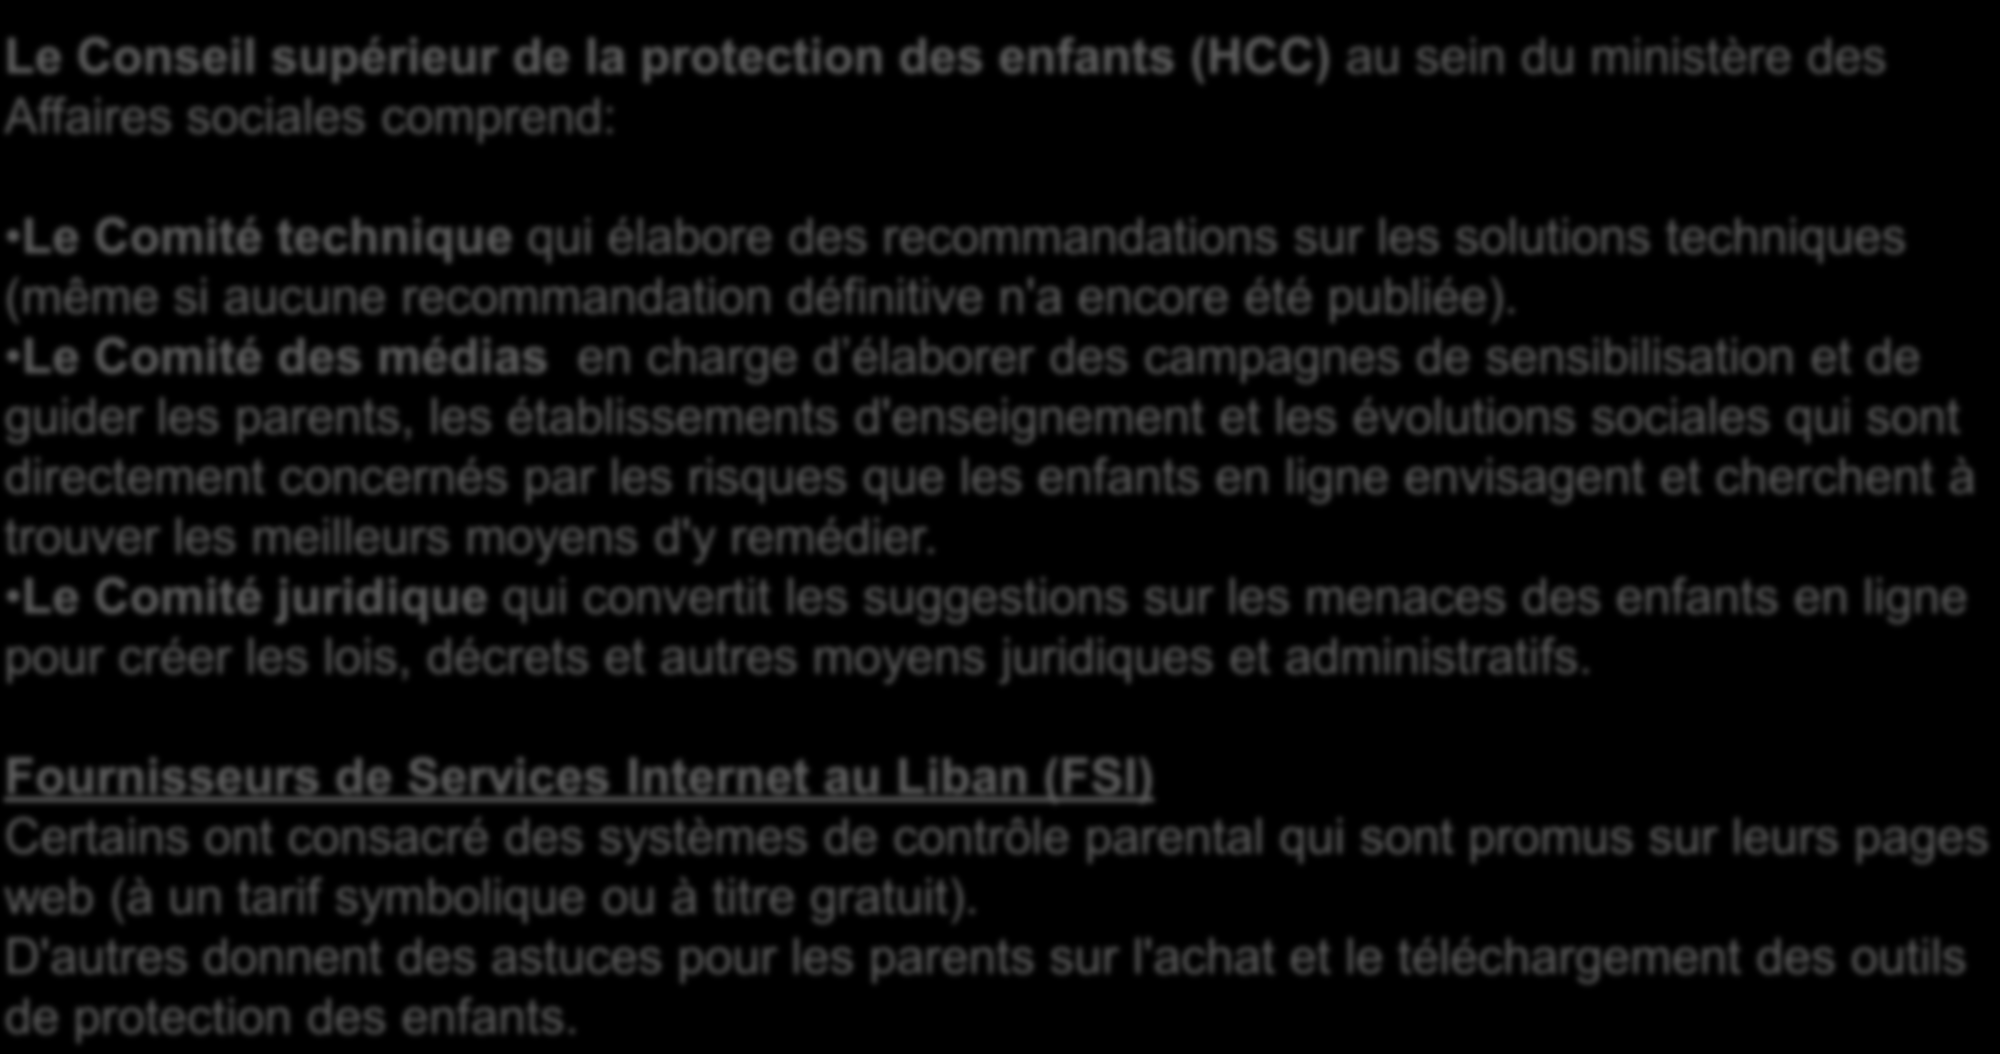 Les efforts du Liban dans les TIC La protection des enfants en ligne - Efforts actuels Le Conseil supérieur de la protection des enfants (HCC) au sein du ministère des Affaires sociales comprend: Le